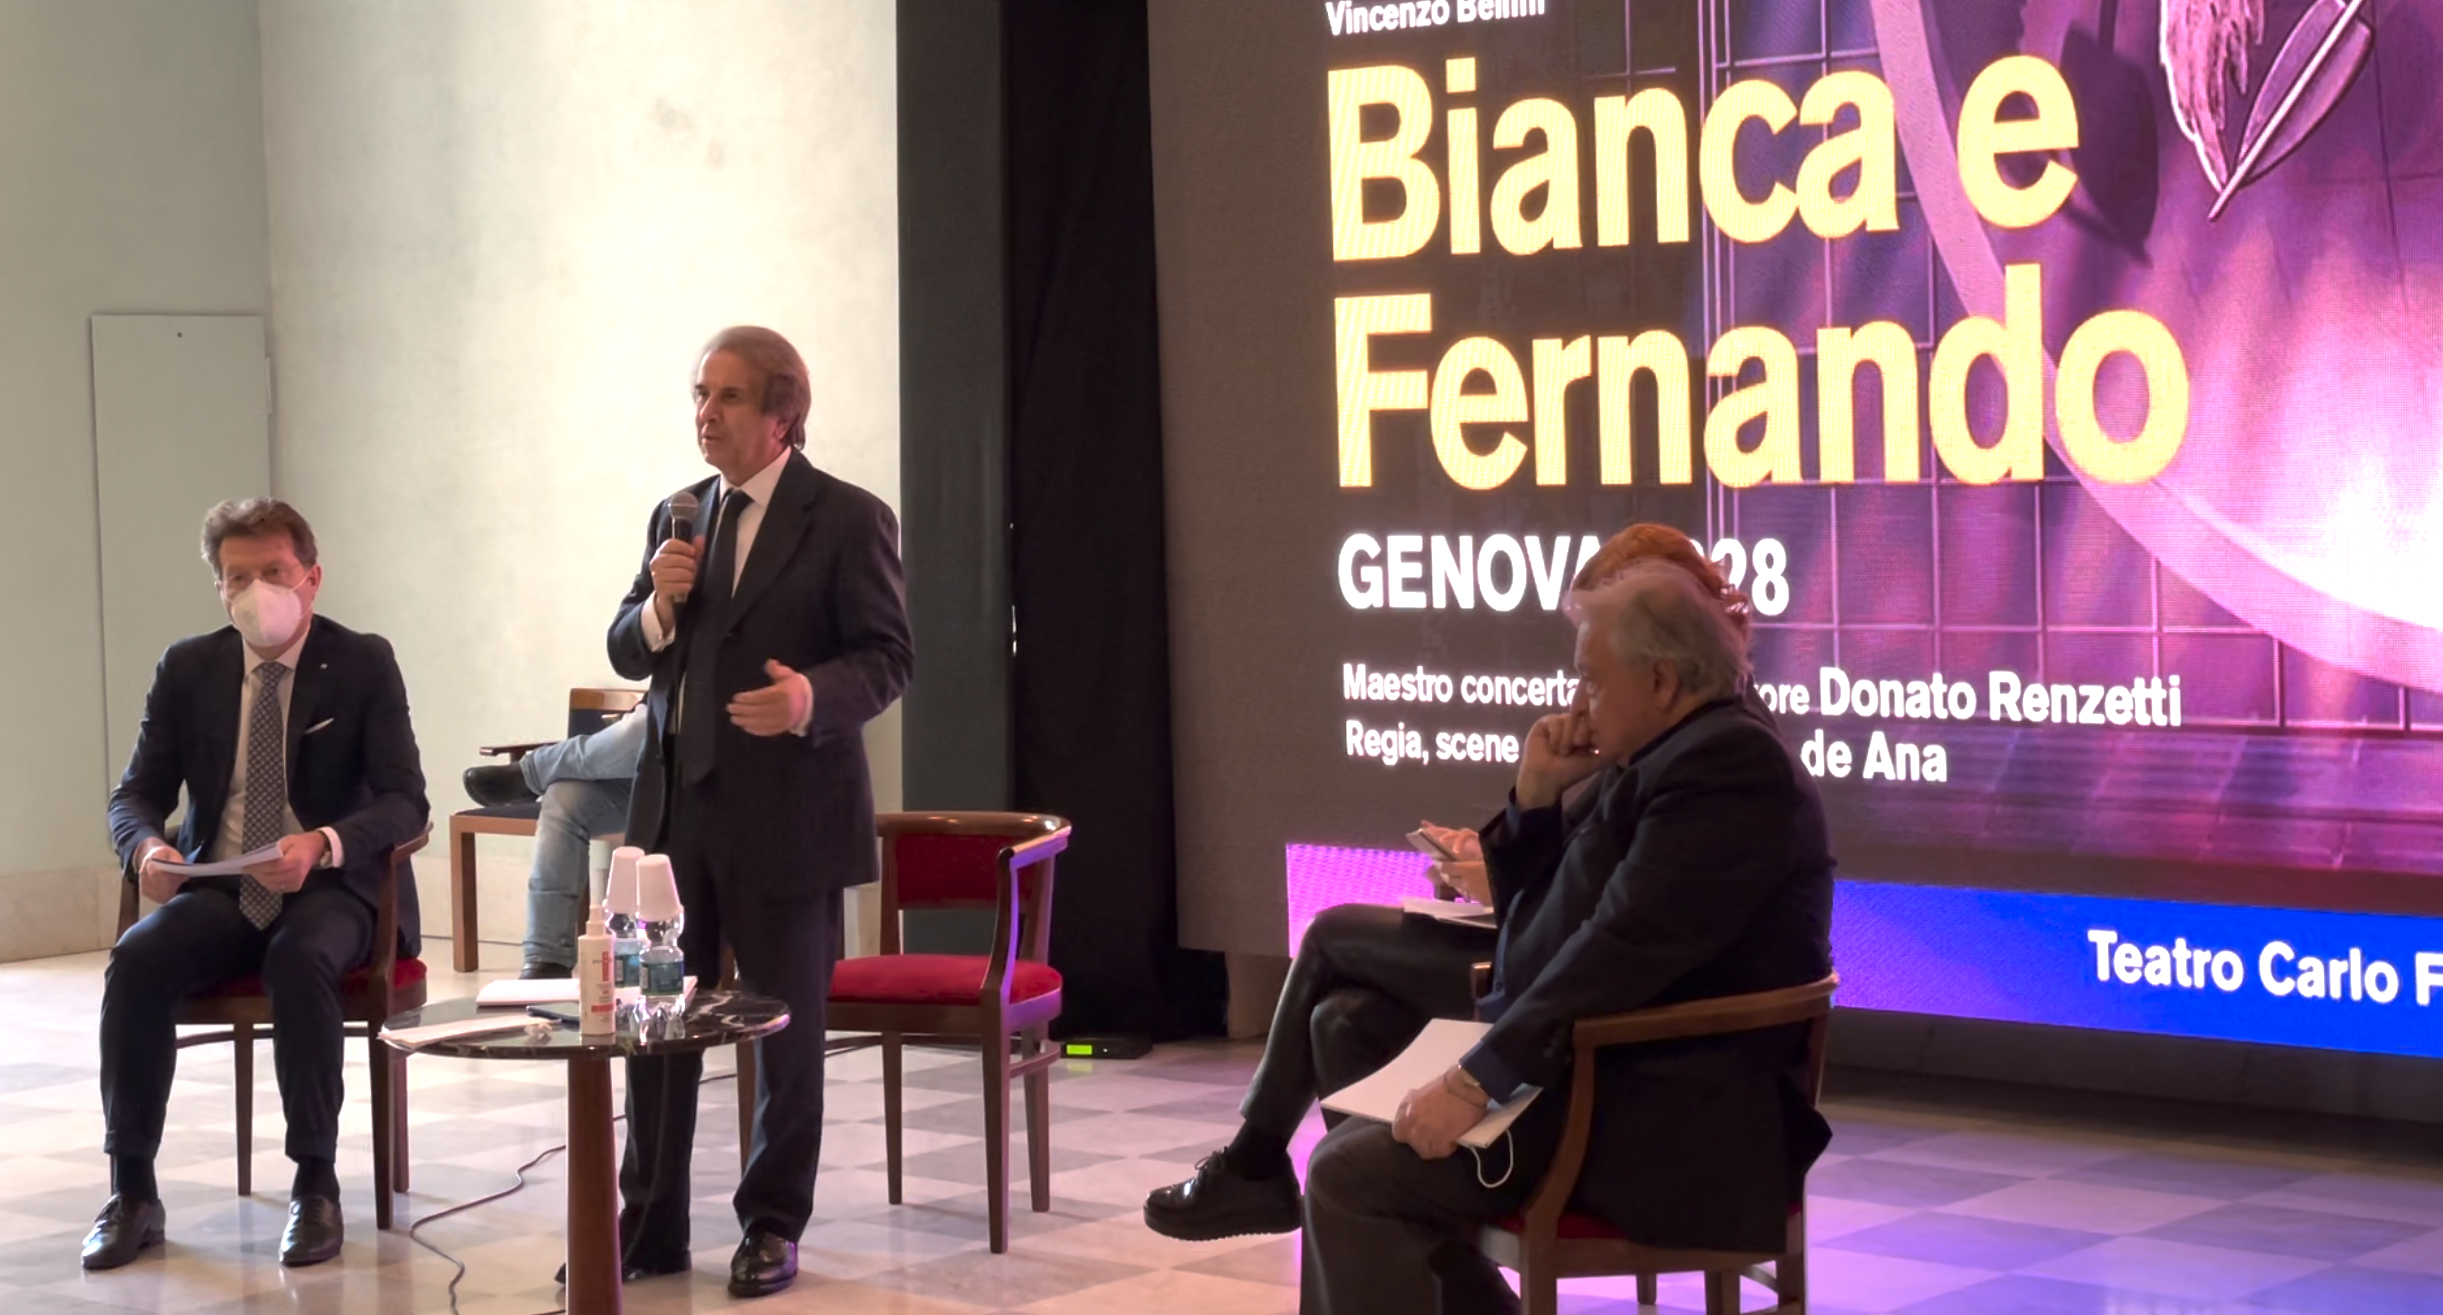 Carlo Felice, si apre la stagione operistica con "Bianca e Fernando"